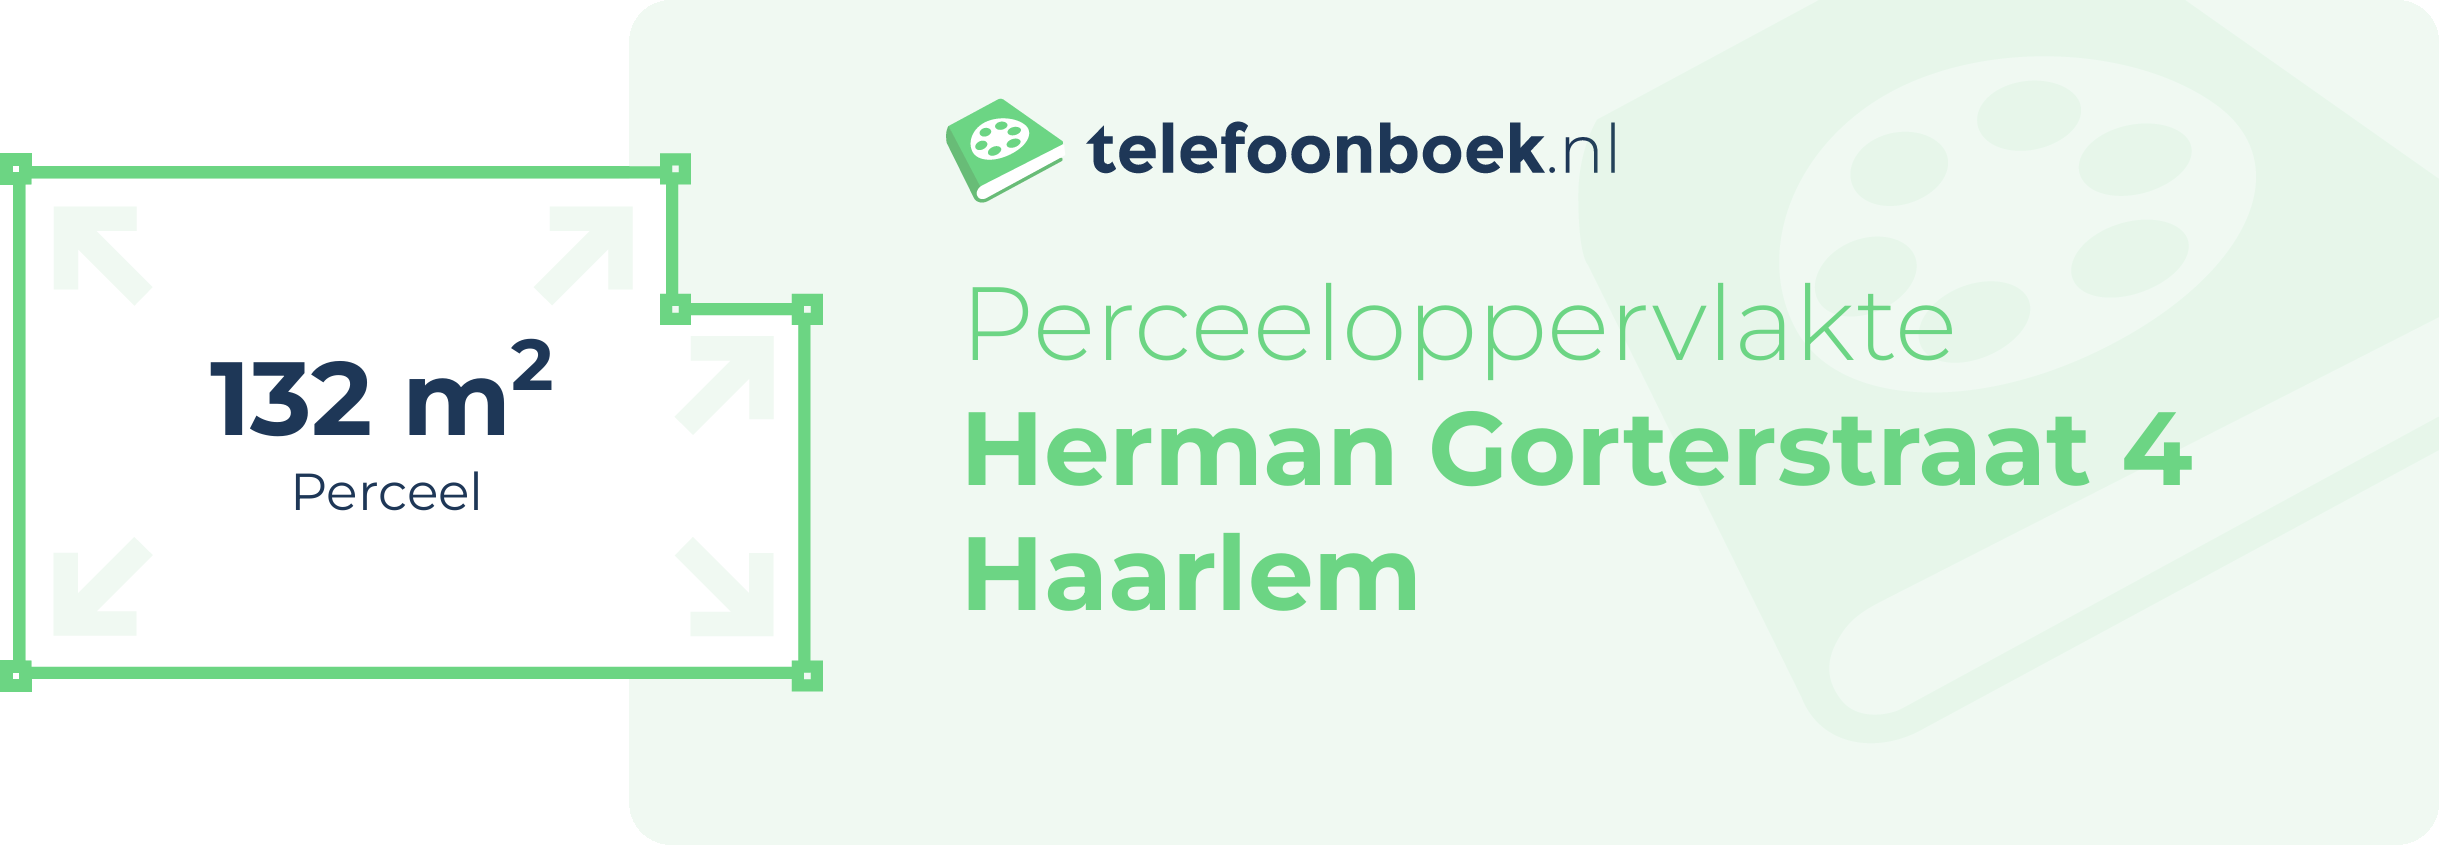 Perceeloppervlakte Herman Gorterstraat 4 Haarlem